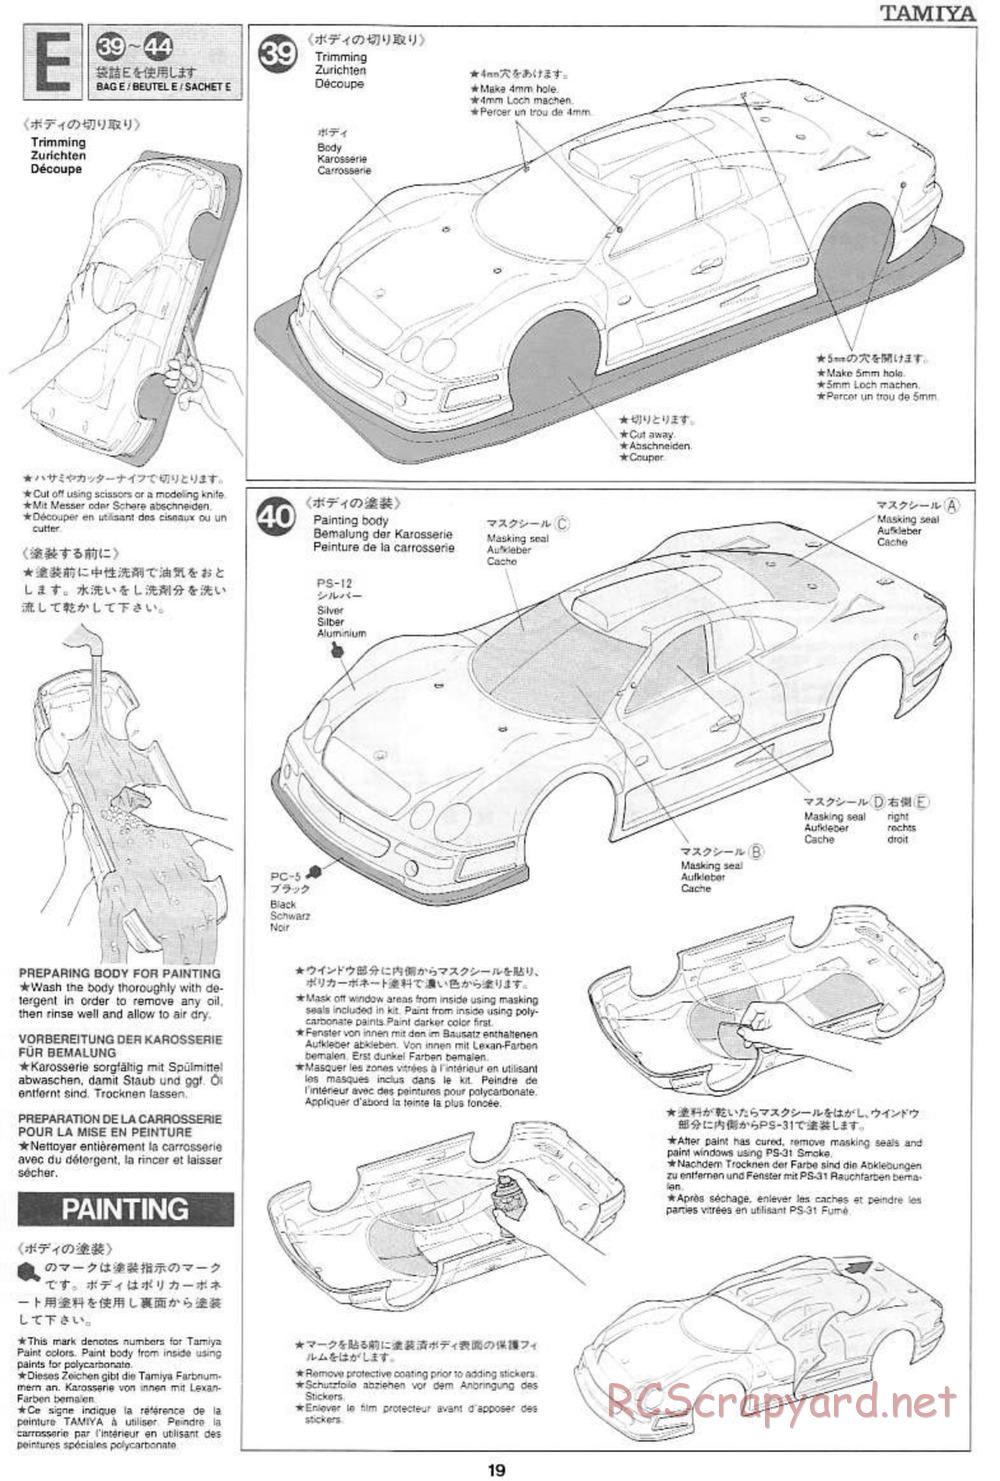 Tamiya - Mercedes CLK GTR Team Sportswear - TG10 Mk.1 Chassis - Manual - Page 19